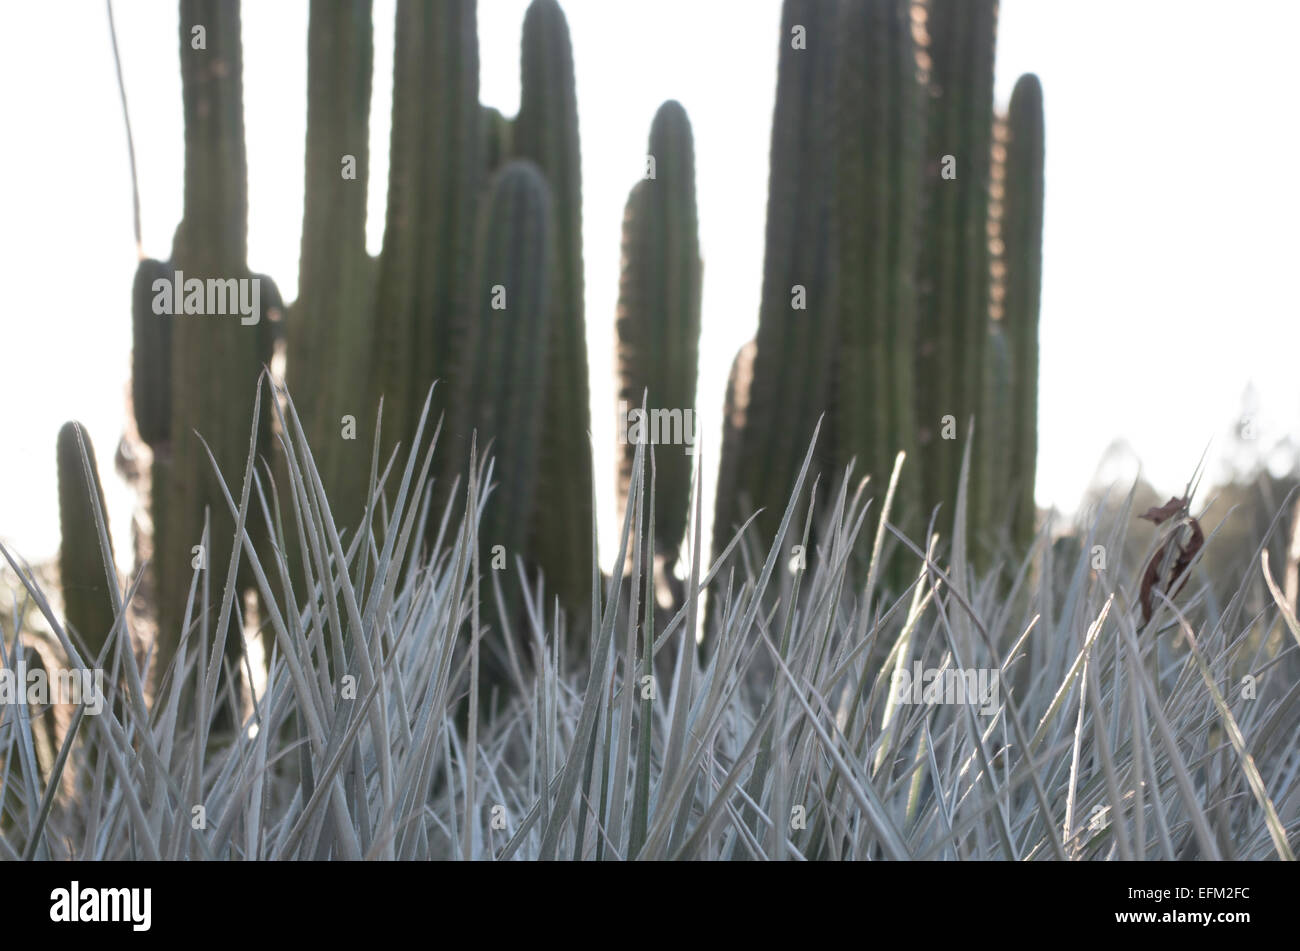 Vibrant cactus life Stock Photo